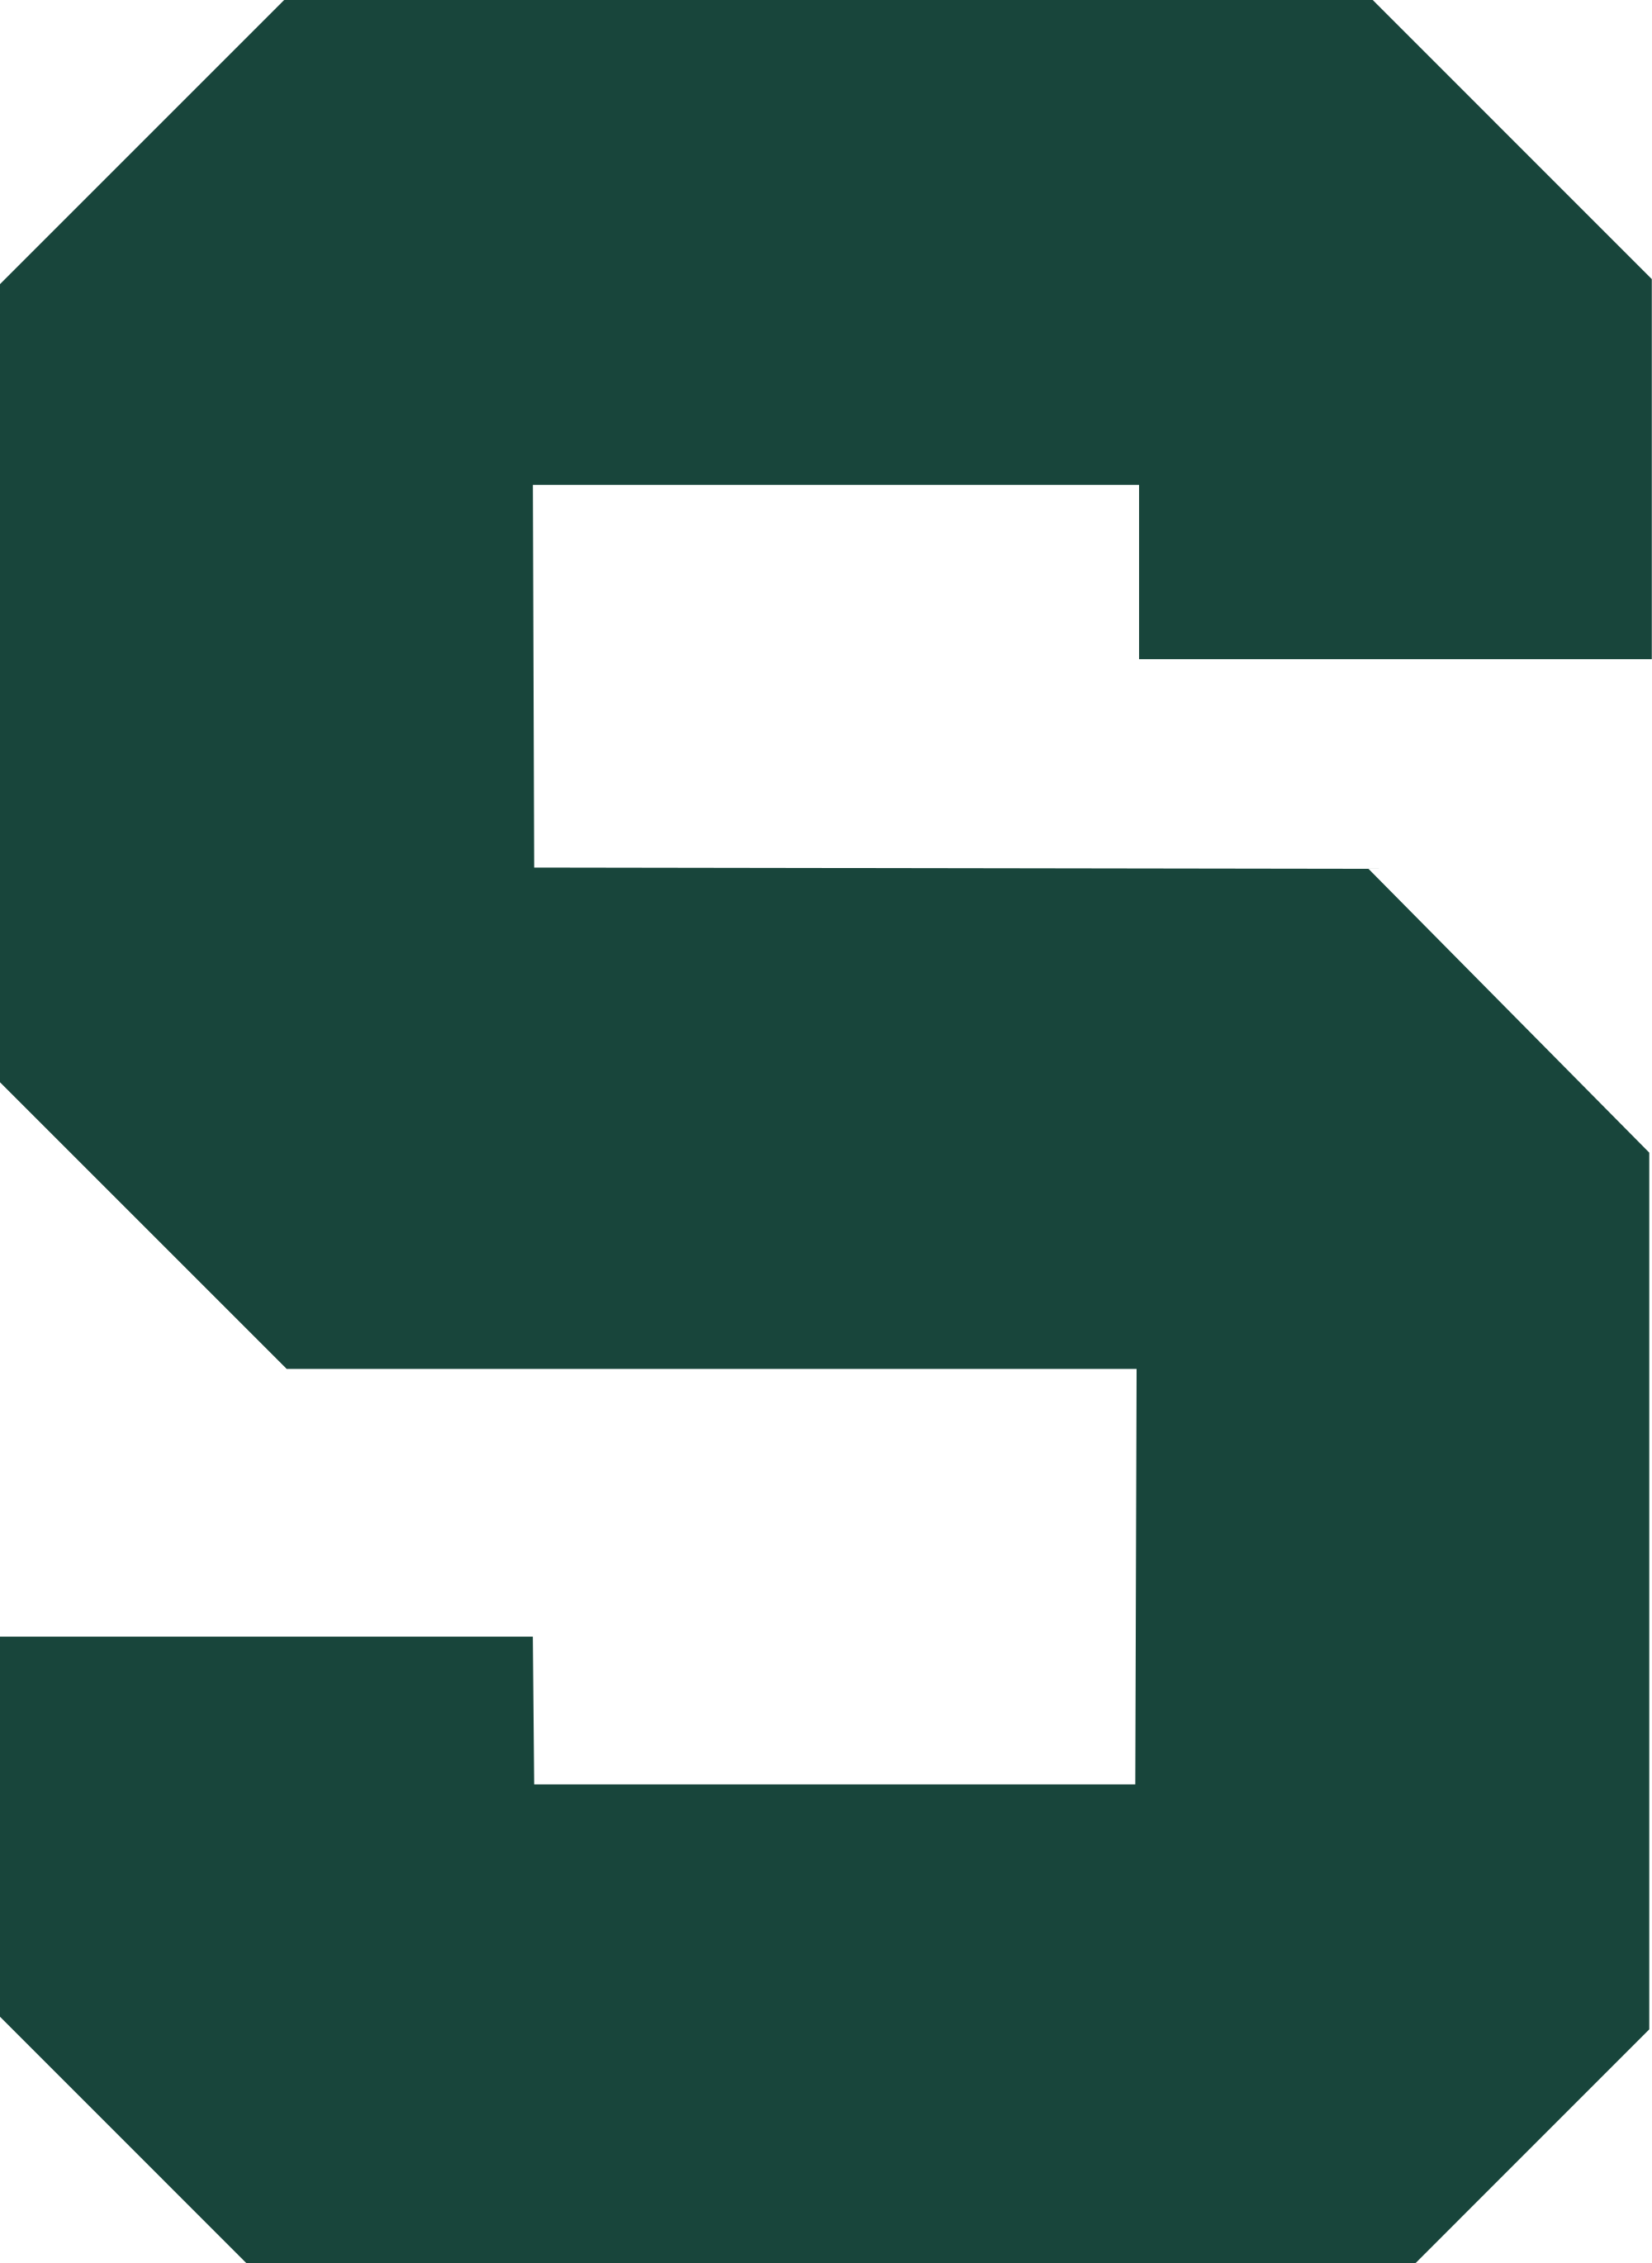 State Logo - Michigan state logo png » PNG Image